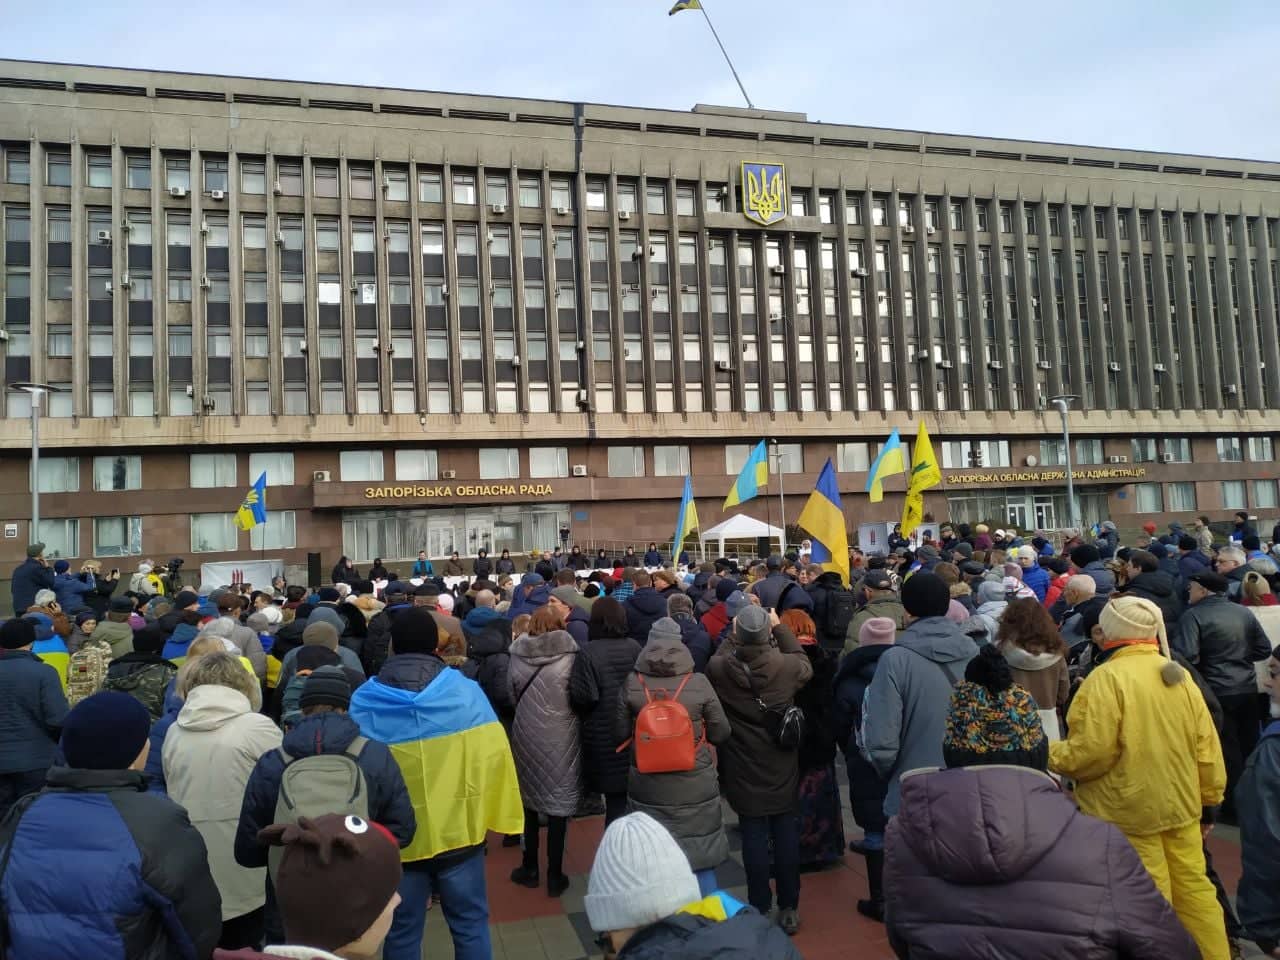 Запоріжці зібралися на Майдані Героїв, щоб відстояти інтереси України (фото)